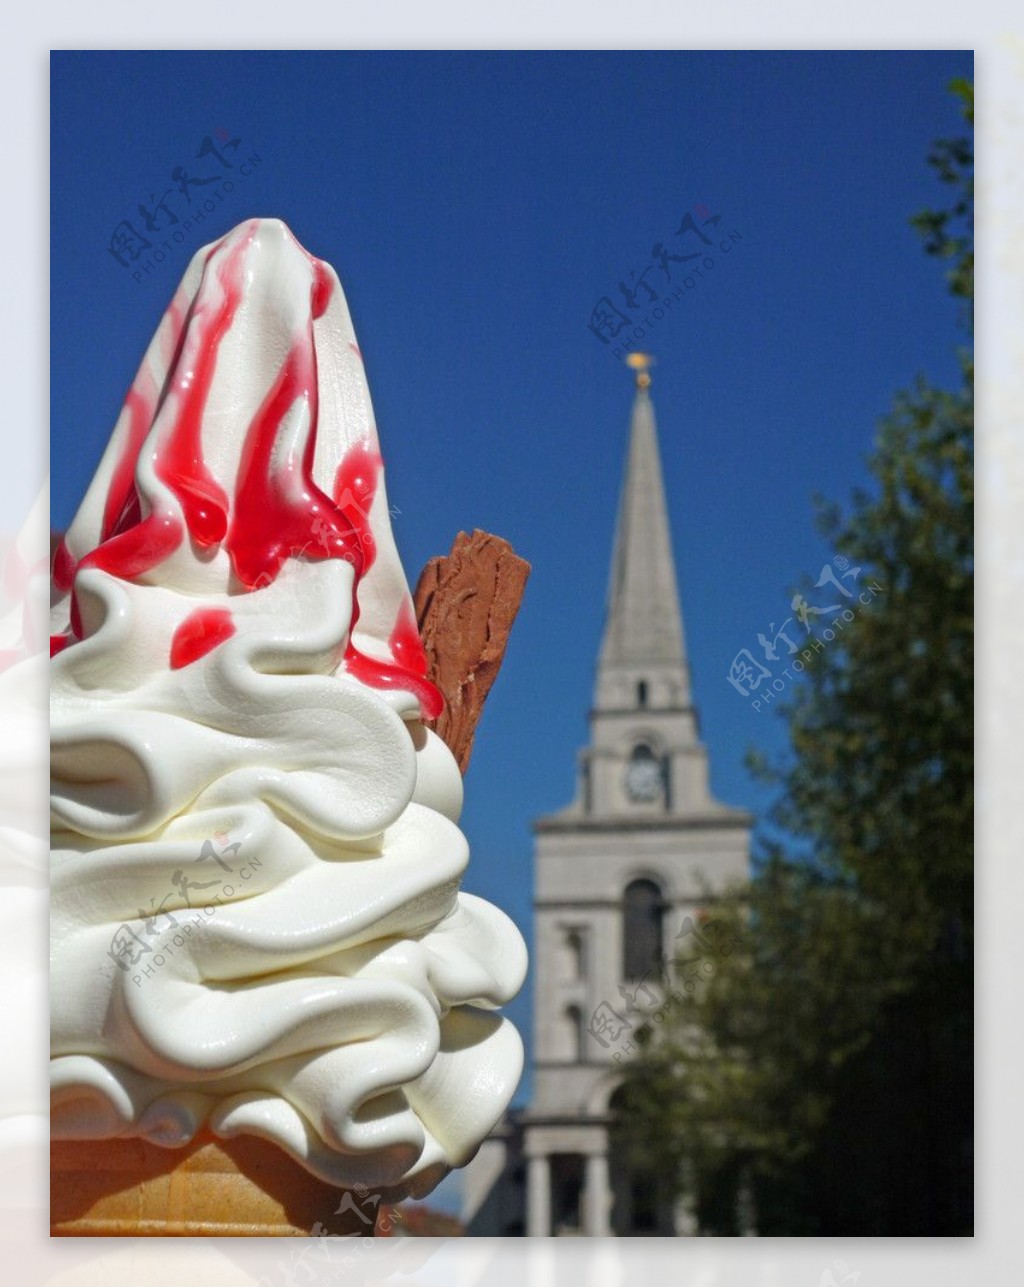 冰淇淋和古堡塔图片